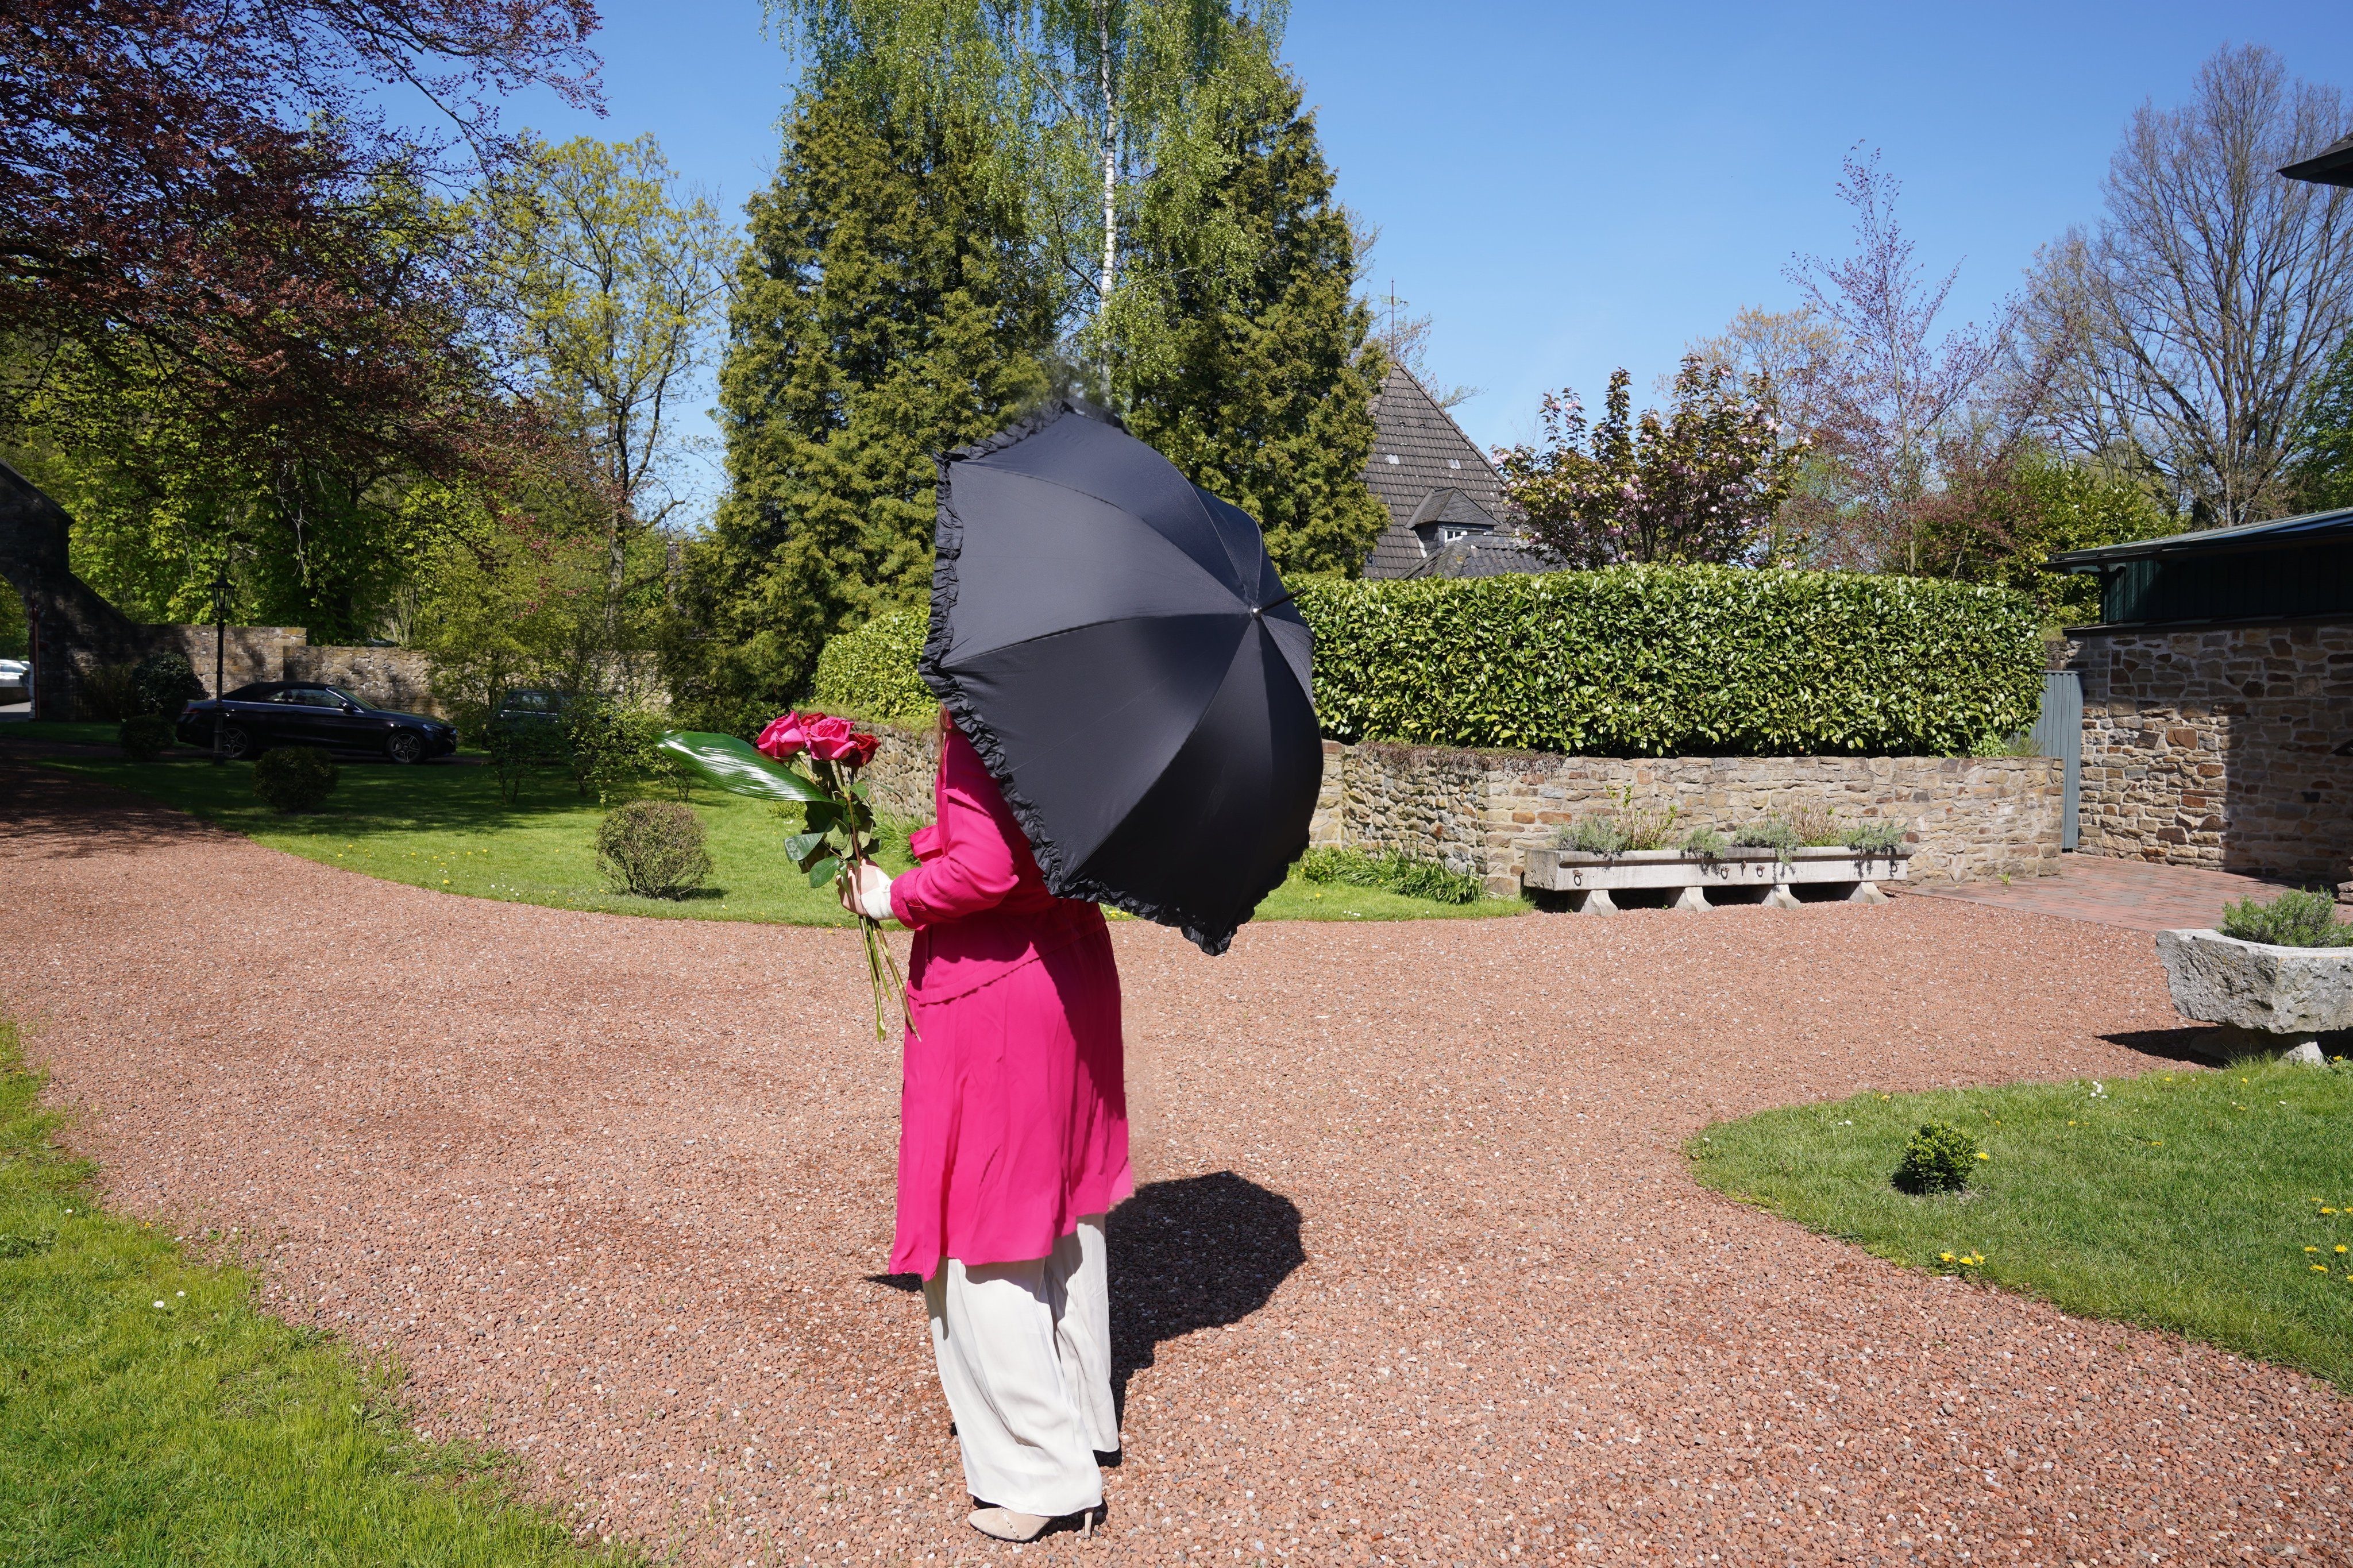 bespannt Stockregenschirm Blumen Doppelt außen Lilienfeld - Rosengarten von doppelt Regenschirm schwarz, bespannt